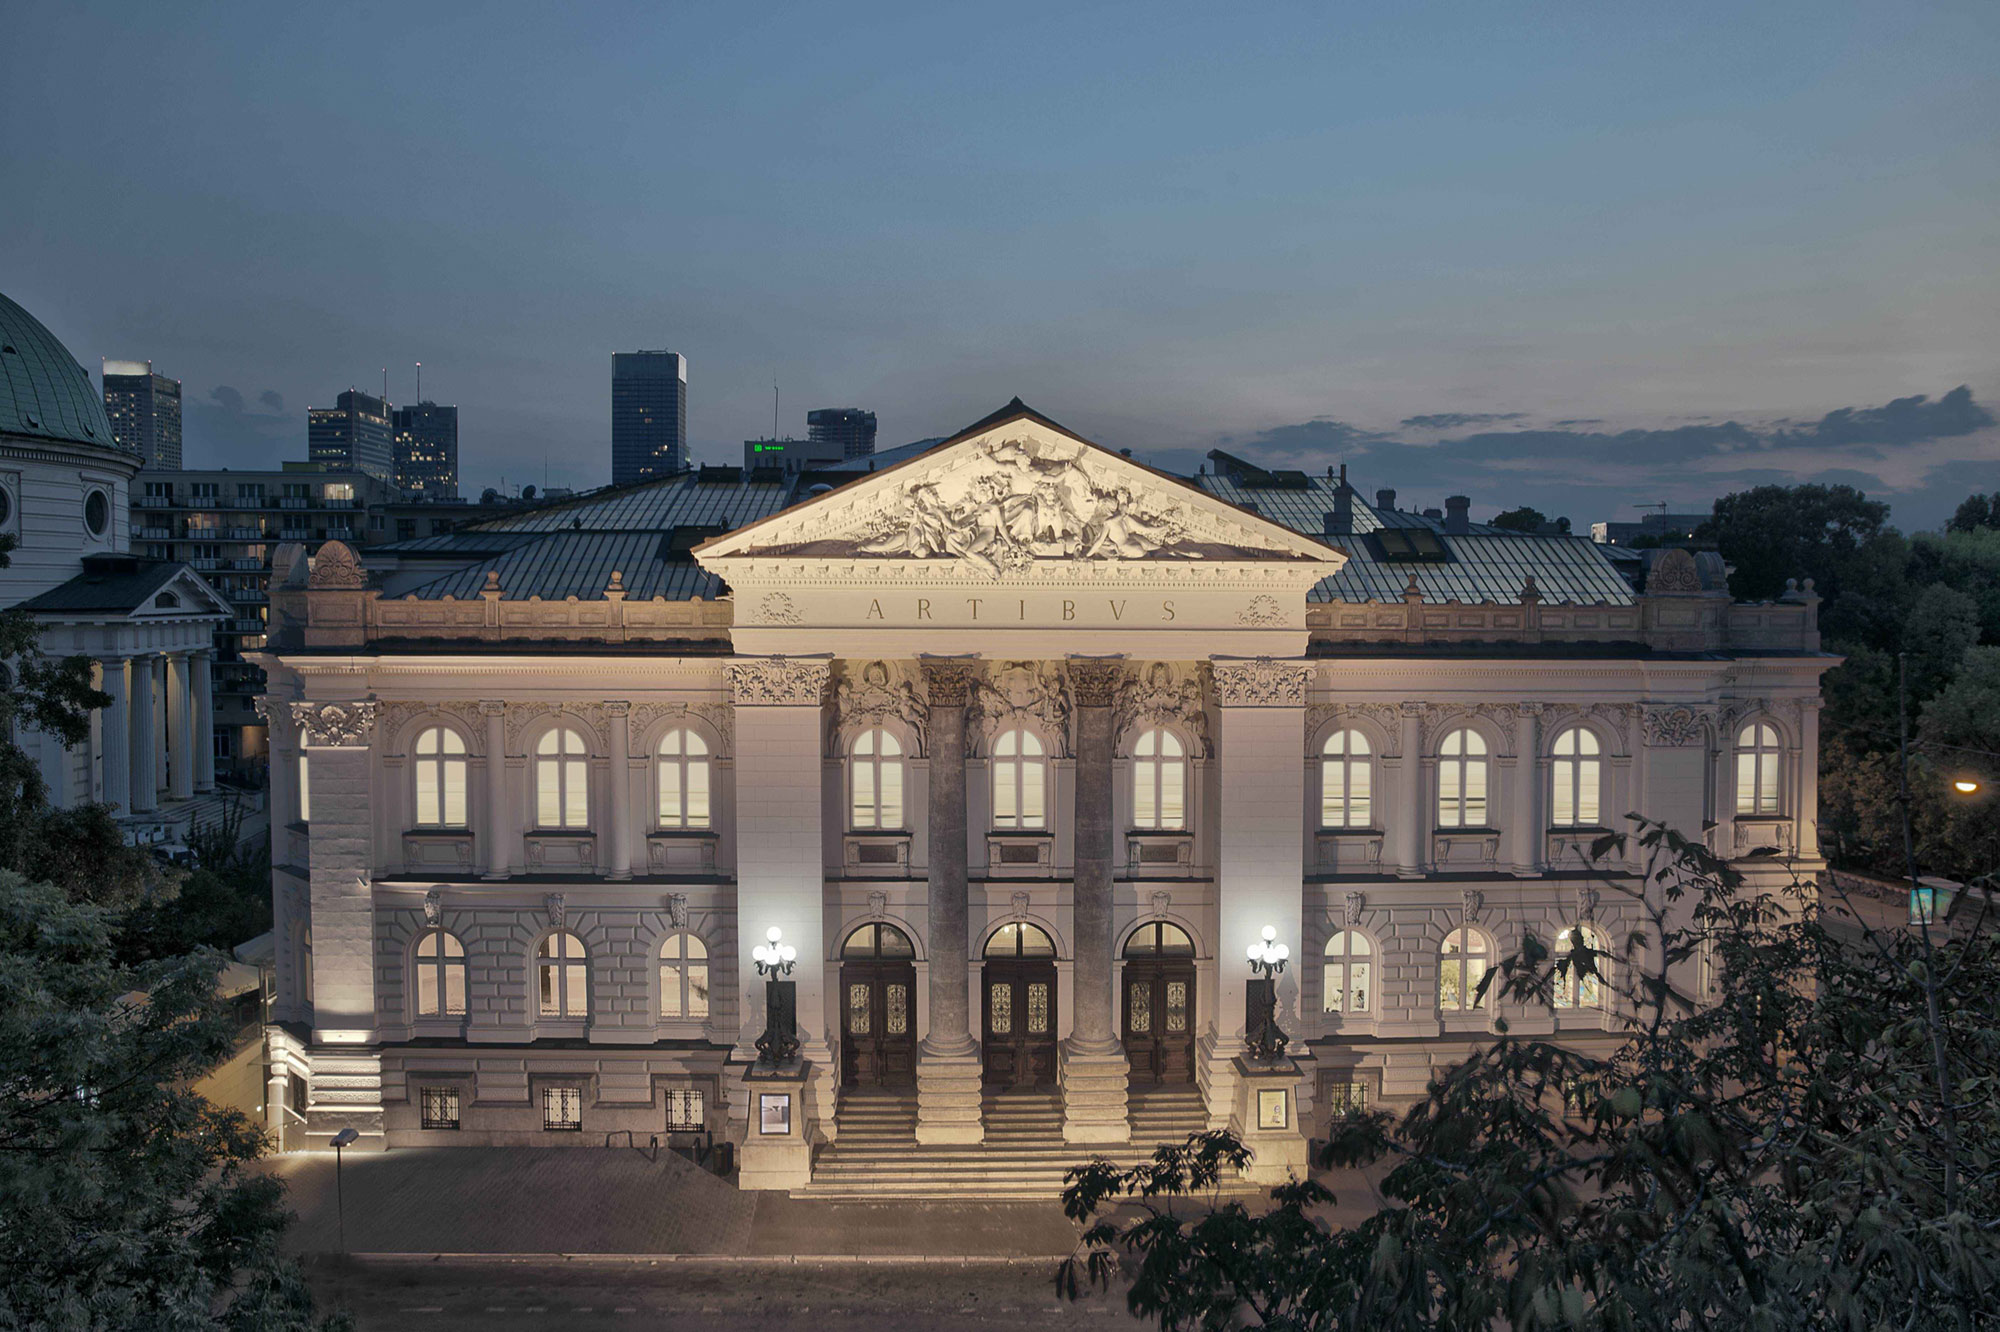 Zachęta – National Gallery of Art